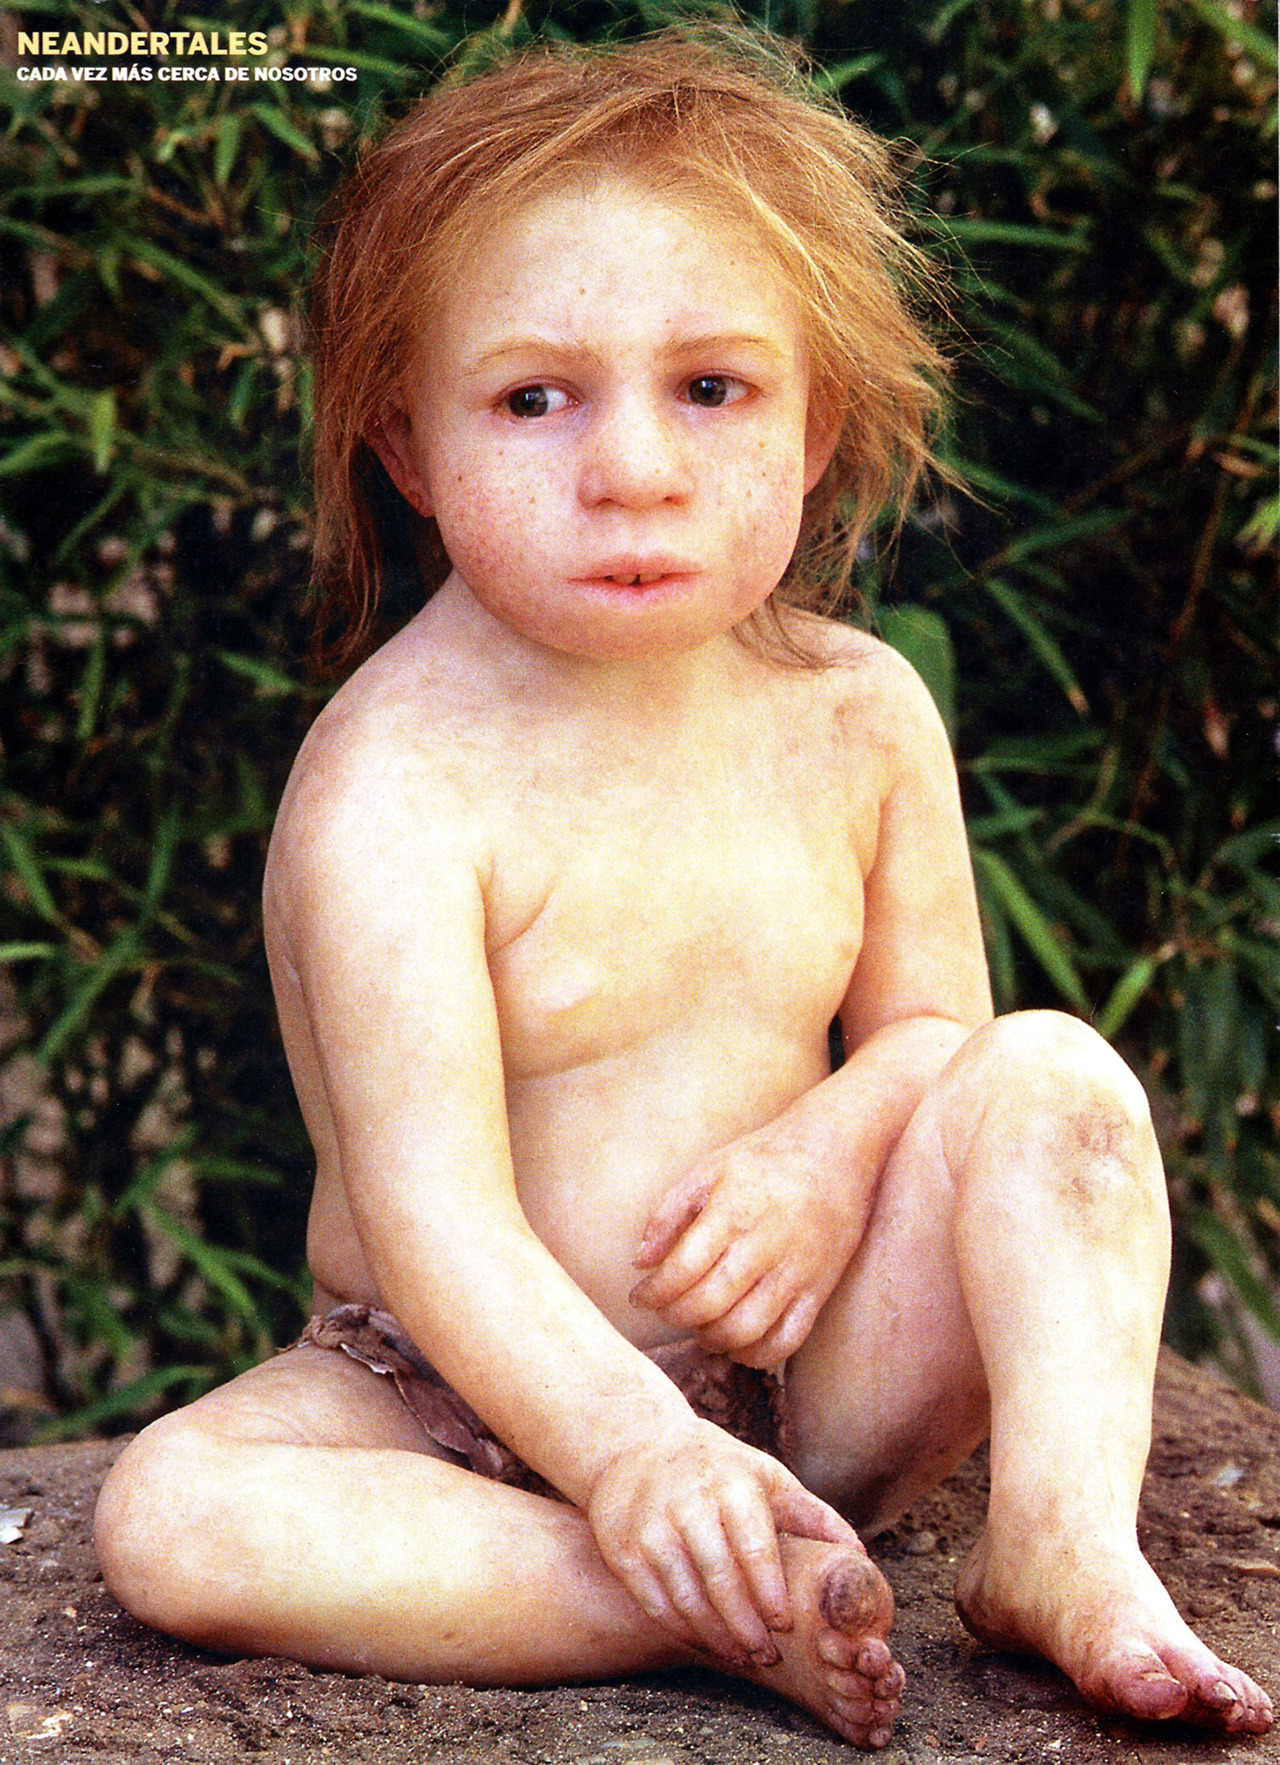 Rekonstrukcja wyglądu trzyletniego dziecka neandertalskiego, którego szczątki znaleziono w południowej Francji